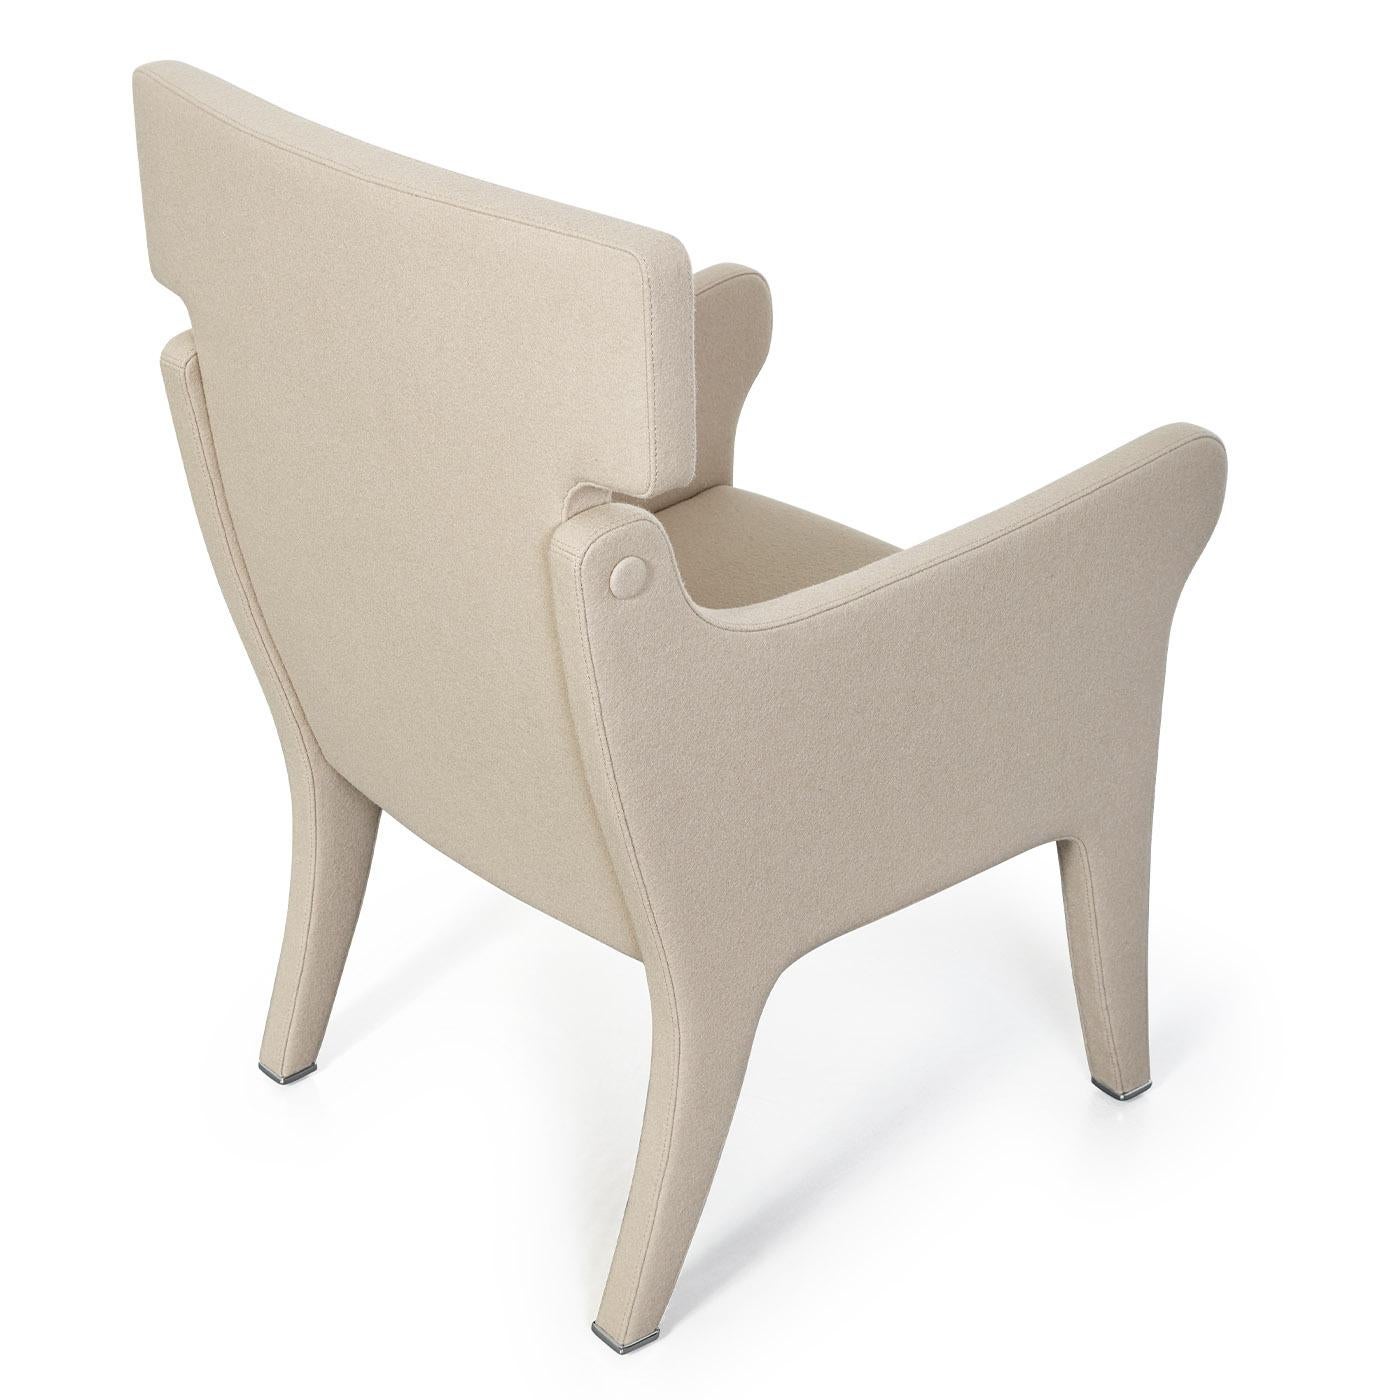 Dieser Sessel von Ignazio Gardella ist ein exquisites Design mit ikonischem, zeitgenössischem Flair und zeichnet sich durch eine Polsterung aus Filzwolle aus, die seine gesamte Form bedeckt. Er ist in einem cremeweißen Farbton gehalten, der auch in